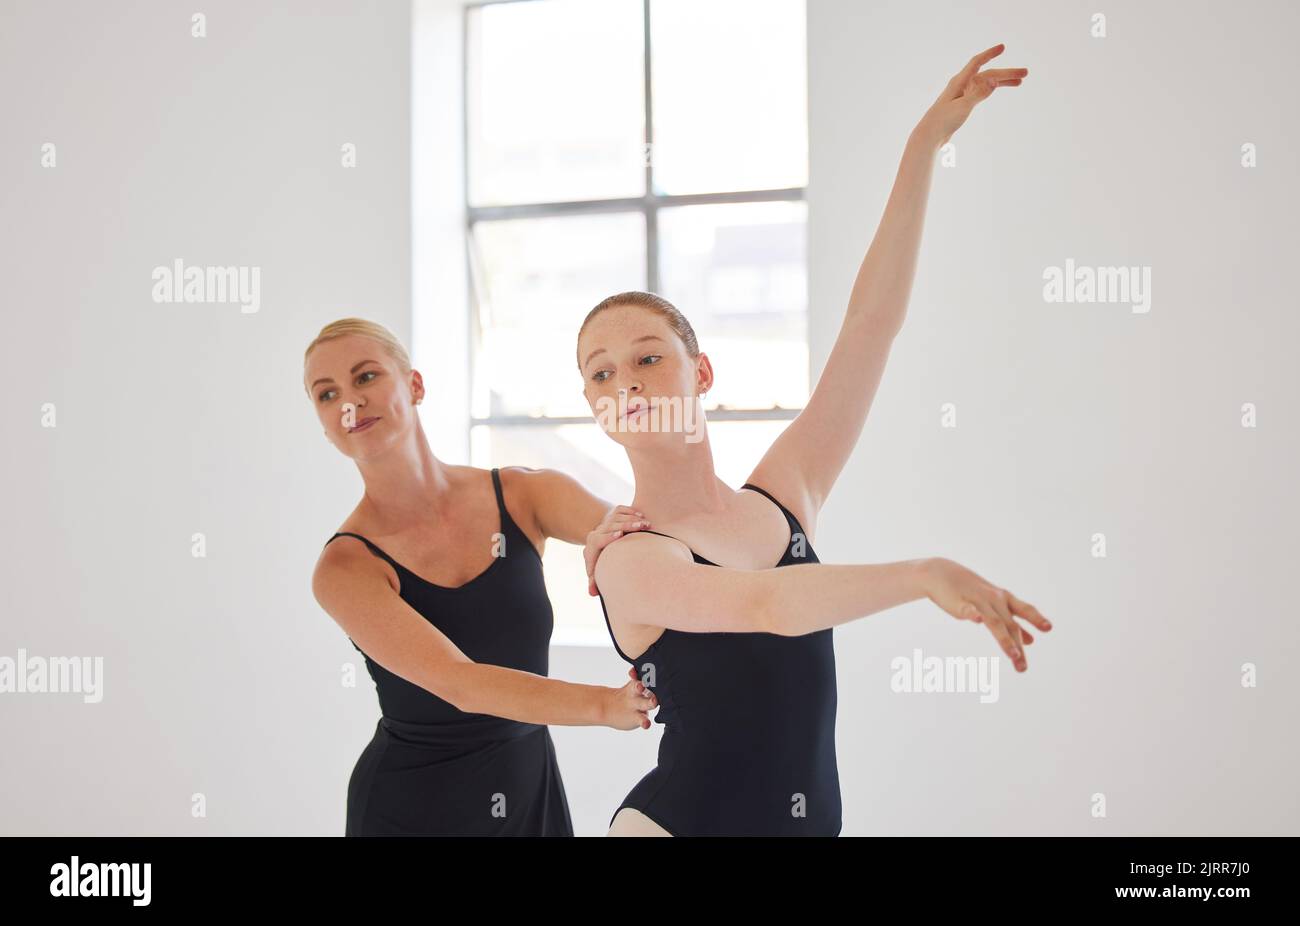 Insegnante di danza, balletto e balletto creativo con postura di ballerina in uno studio moderno. Istruttore e calzata donna, elegante e flessibile ballerino formazione Foto Stock